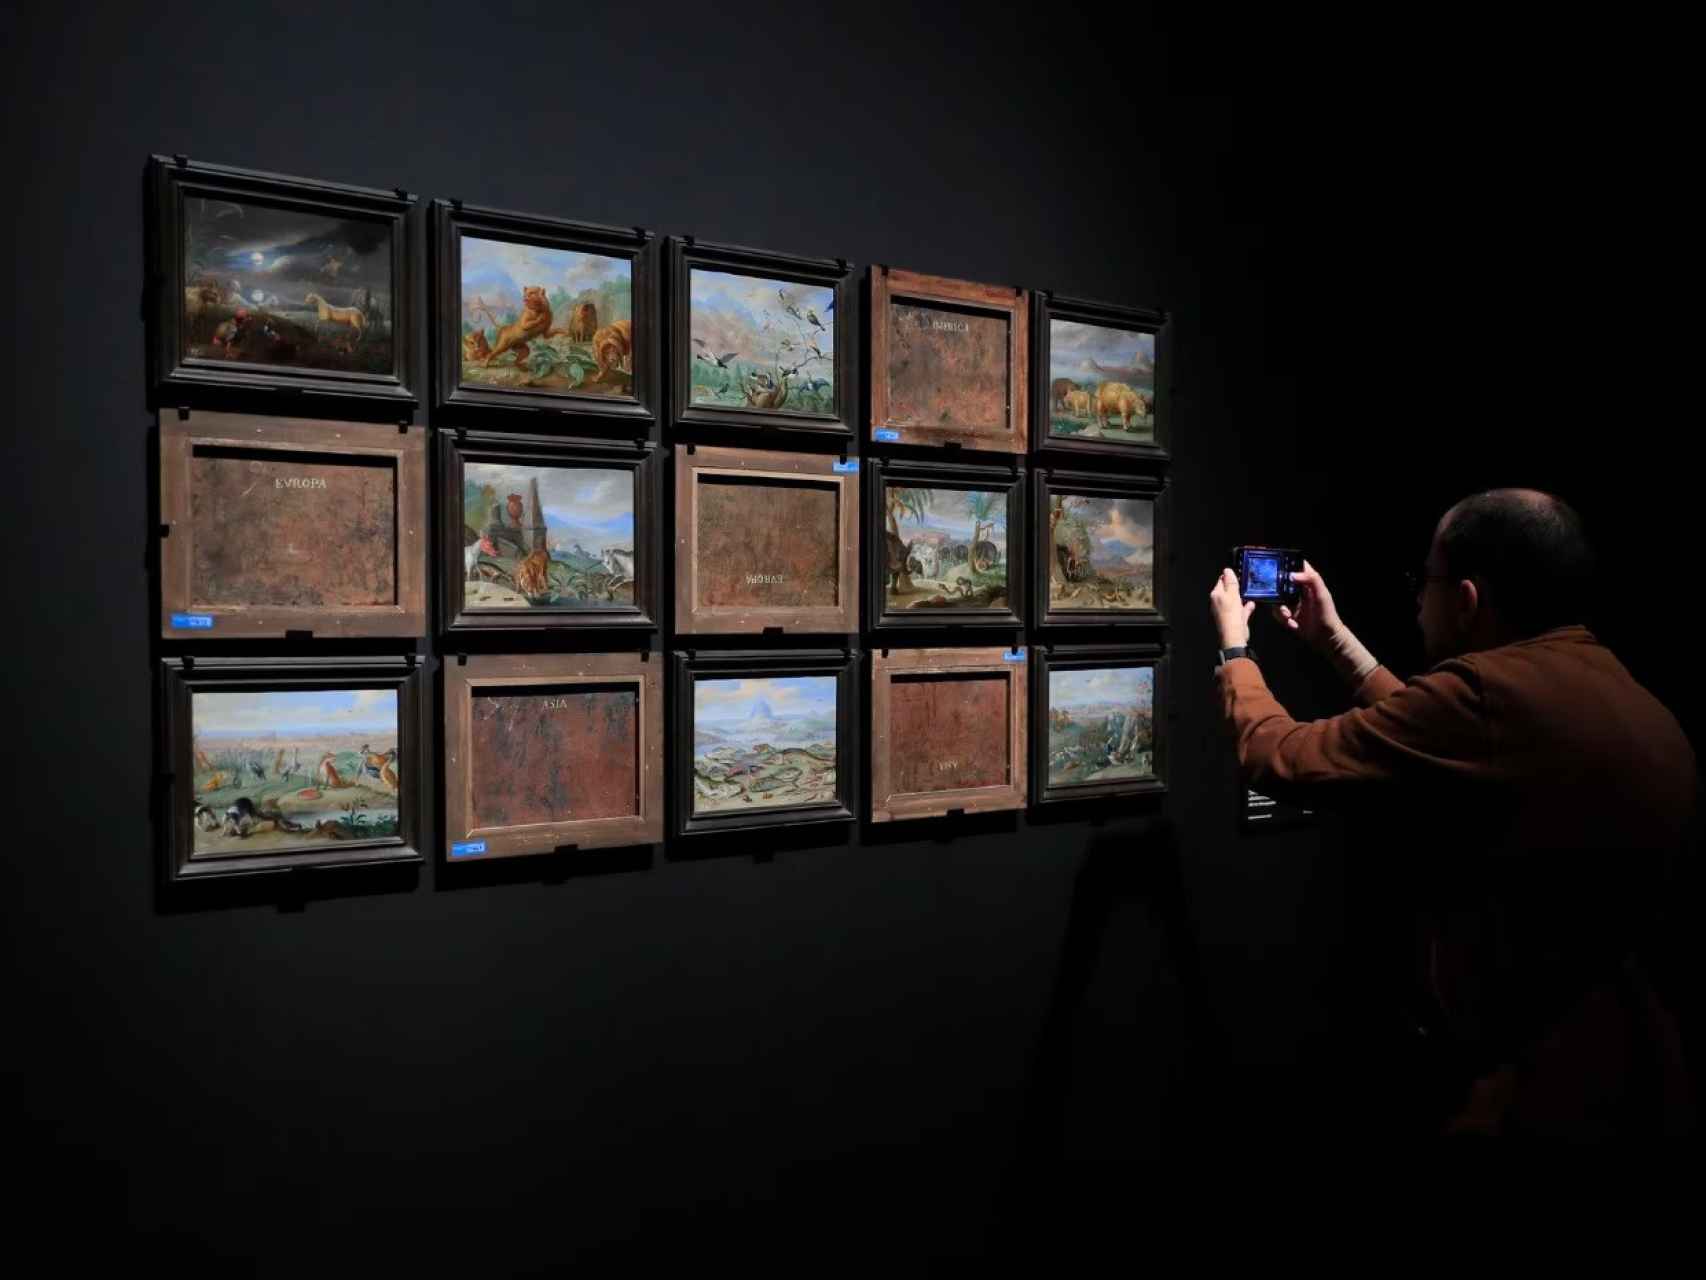 Una persona toma fotografías de algunas de las obras expuestas por delante y por detrás en la exposición ‘Reversos’.